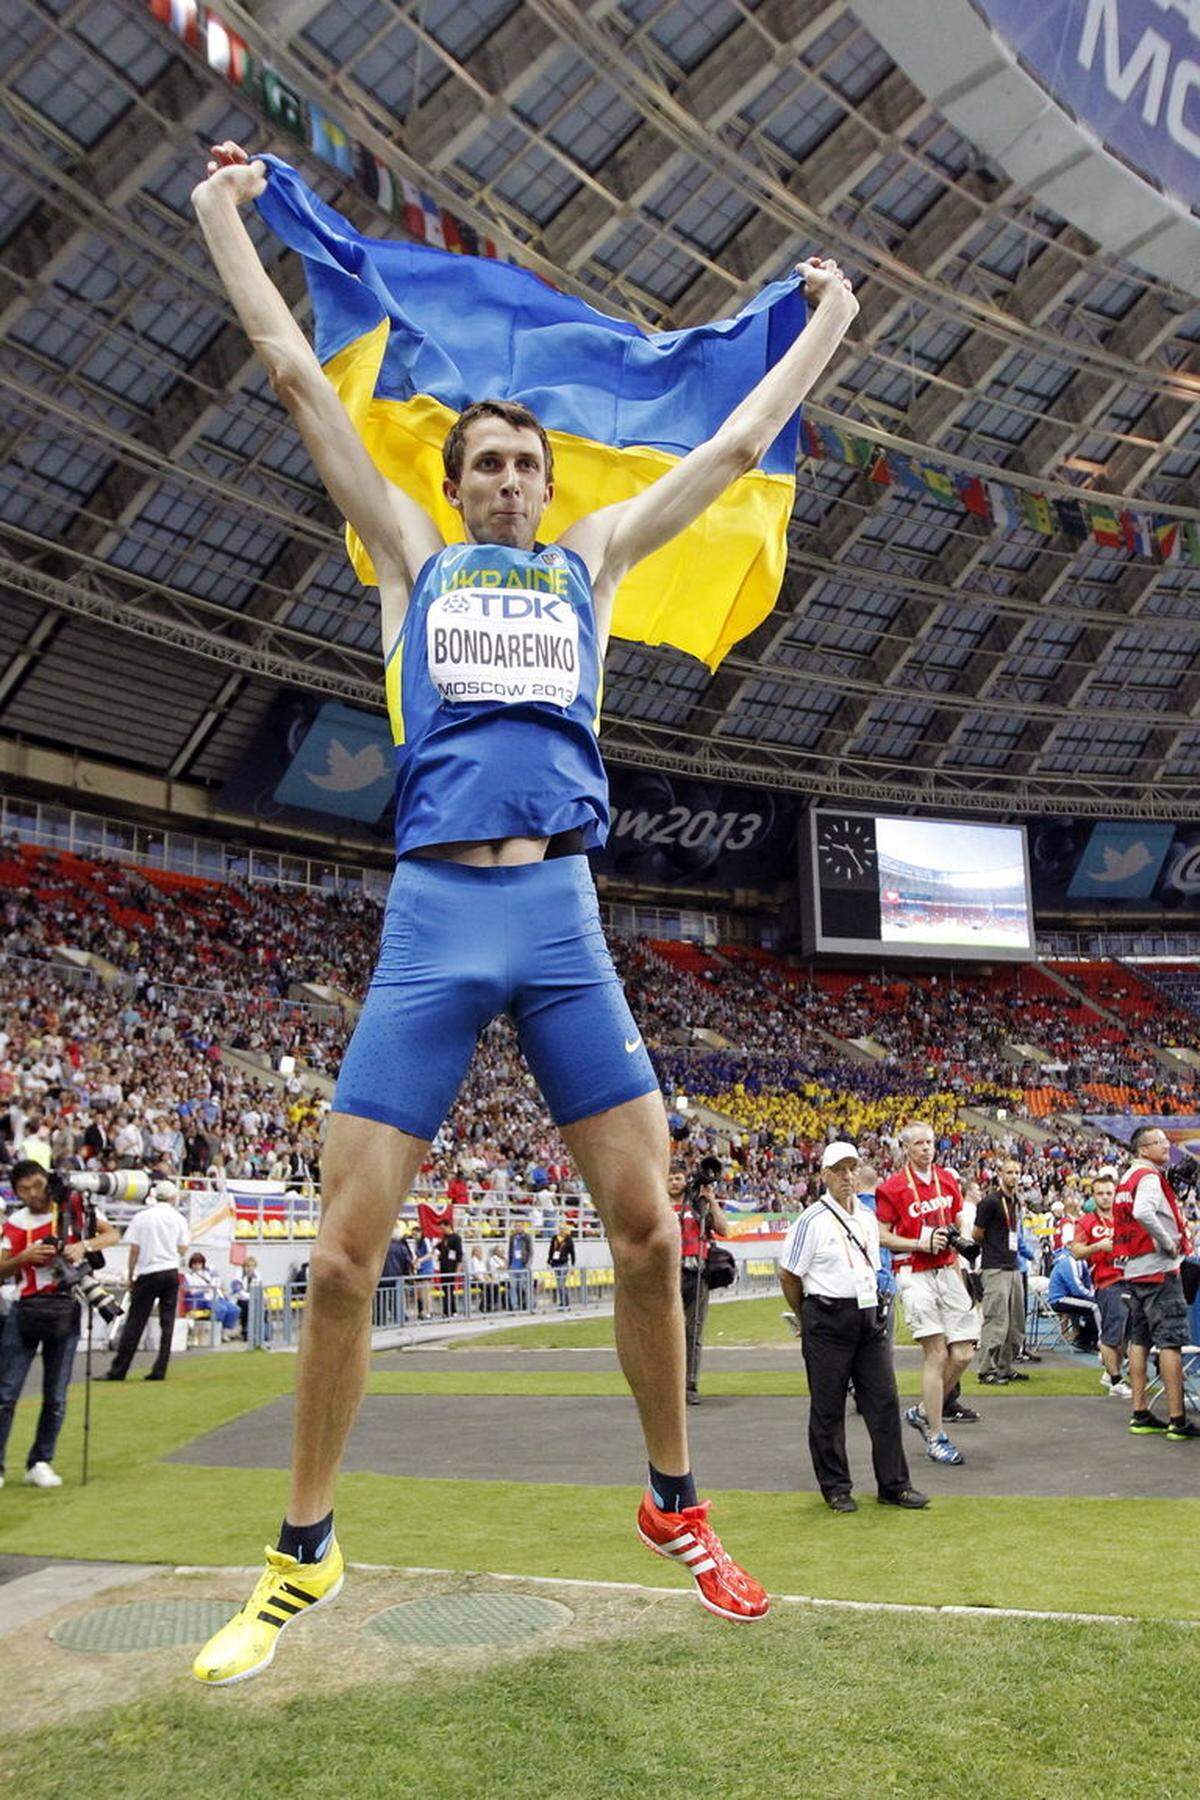 In einem hochklassigen Hochsprungwettbewerb setzt sich der Jahresbeste und Favorit Bohdan Bondarenko aus der Ukraine mit 2,41 Meter durch. An der neuen Weltrekordhöhe von 2,46 Meter scheitert er. Seine stärksten Herausforderer sind der Quatari Mutaz Essa Barshim und der Kanadier Derek Drouin, die beide 2,38 Meter meistern.